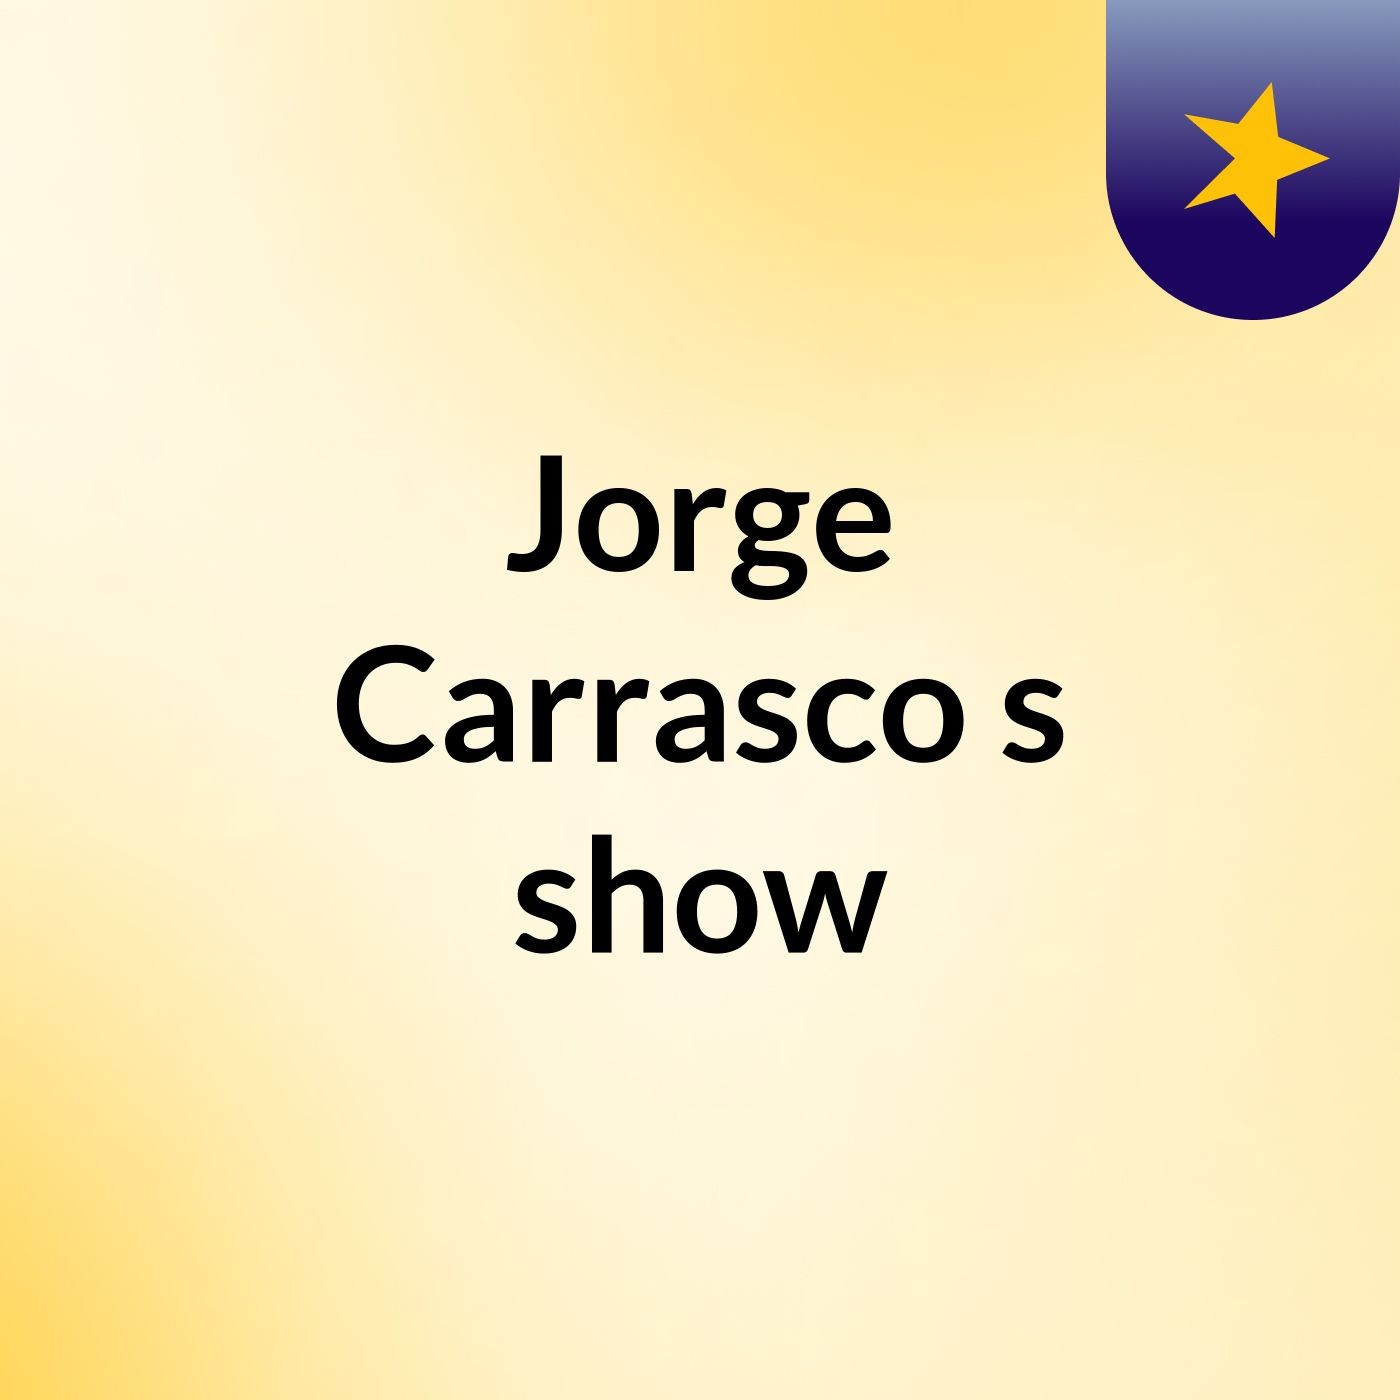 Jorge Carrasco's show